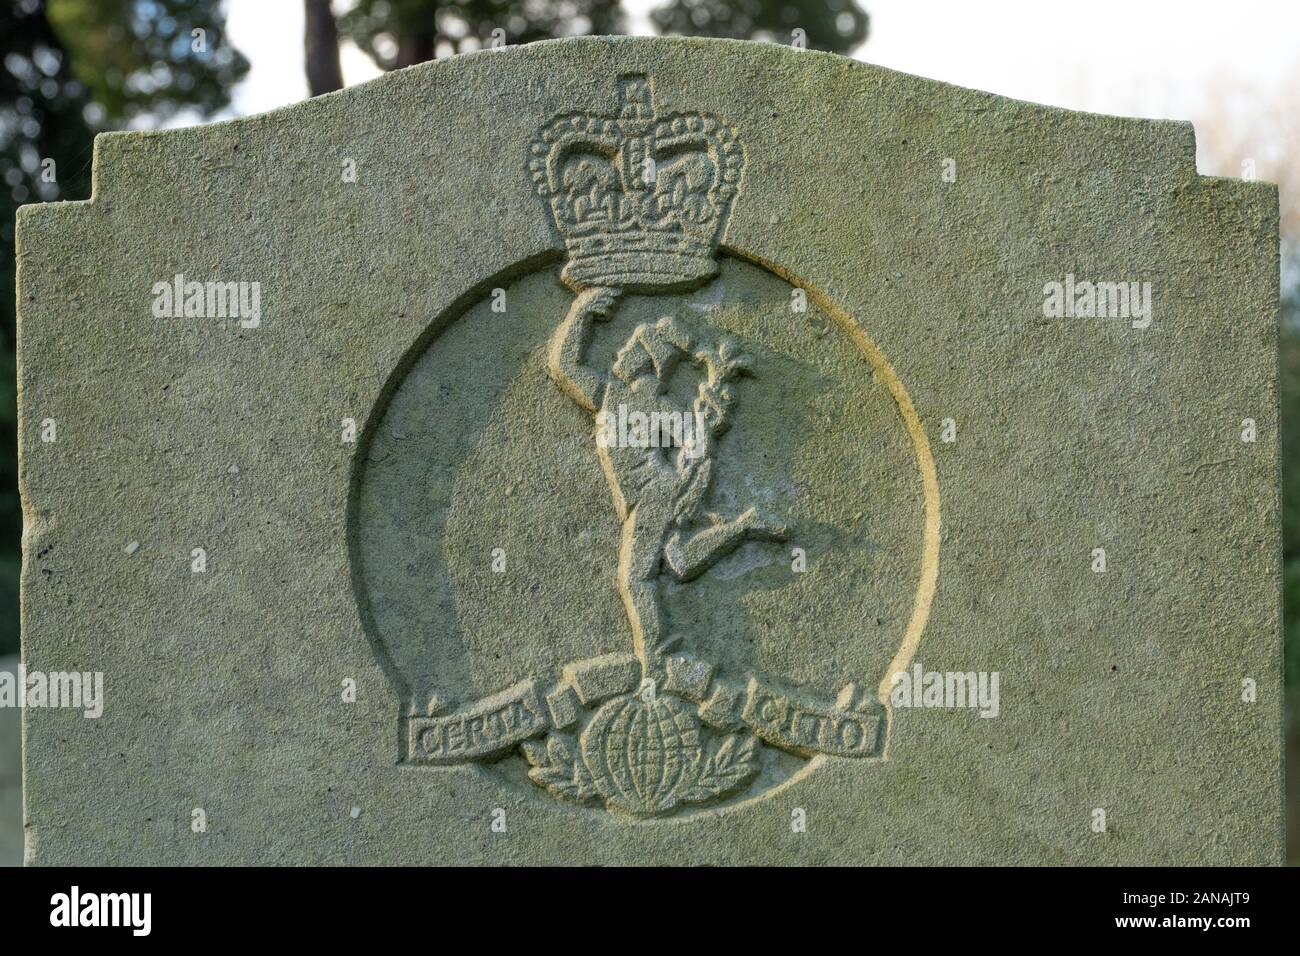 Royal Corps der Signale regimental Abzeichen emblem Crest auf militärischer Grabstein oder Grabstein, Großbritannien Stockfoto